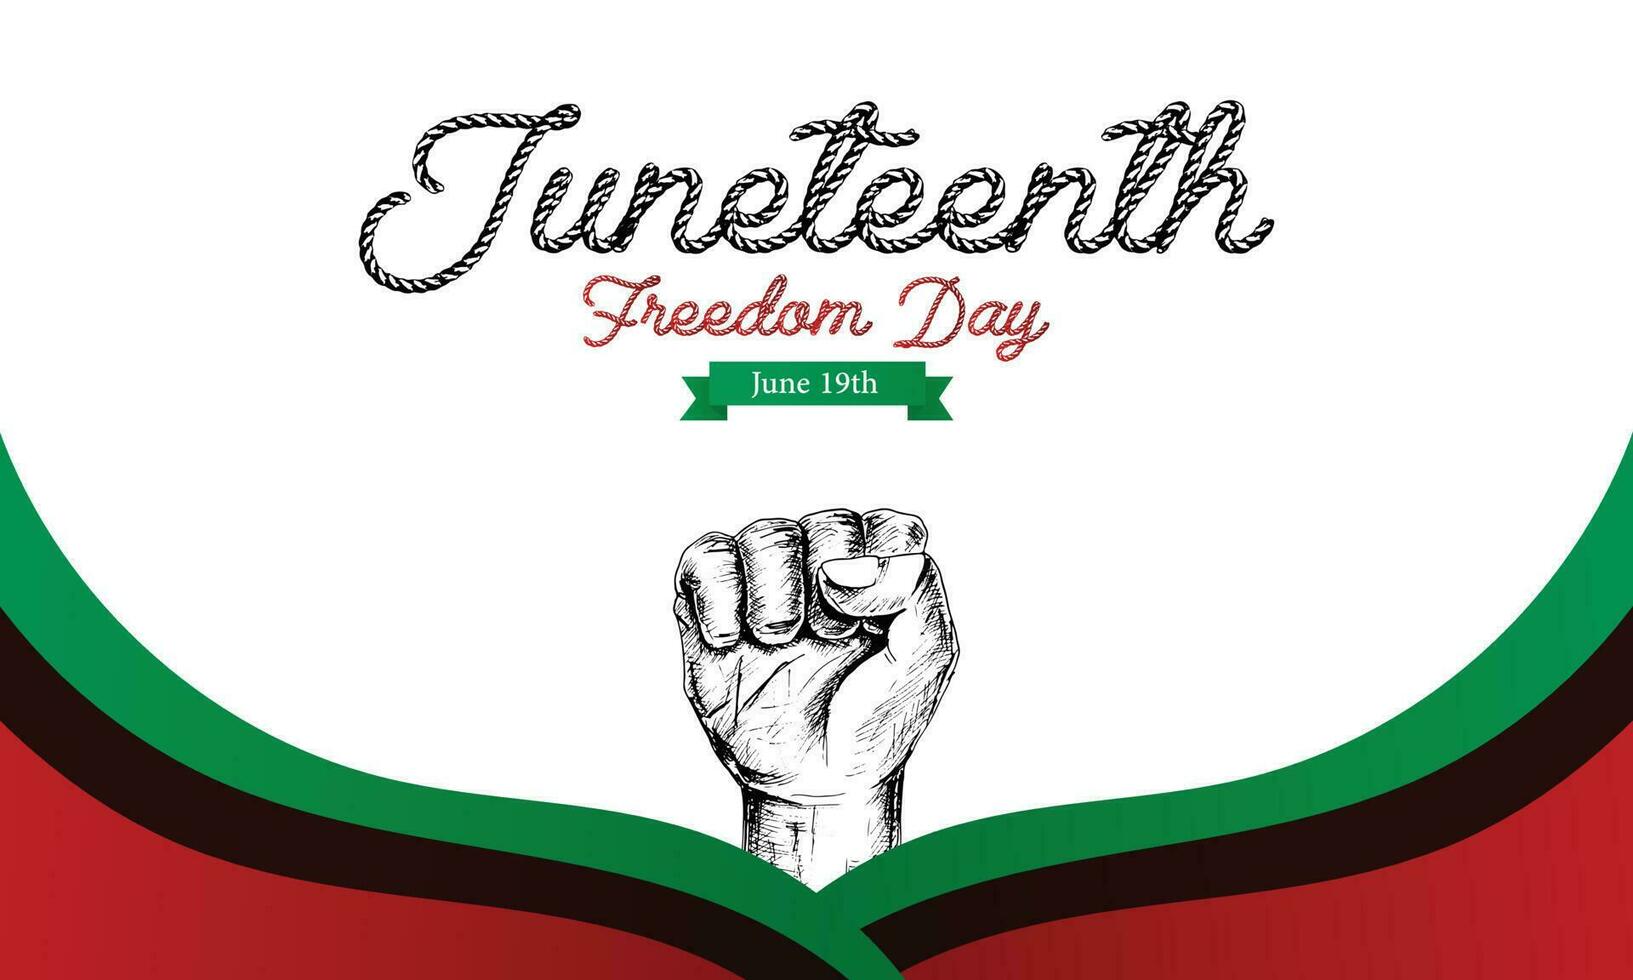 diecinueve de junio día, celebracion libertad, emancipación día en 19 junio, afroamericano historia y herencia. vector